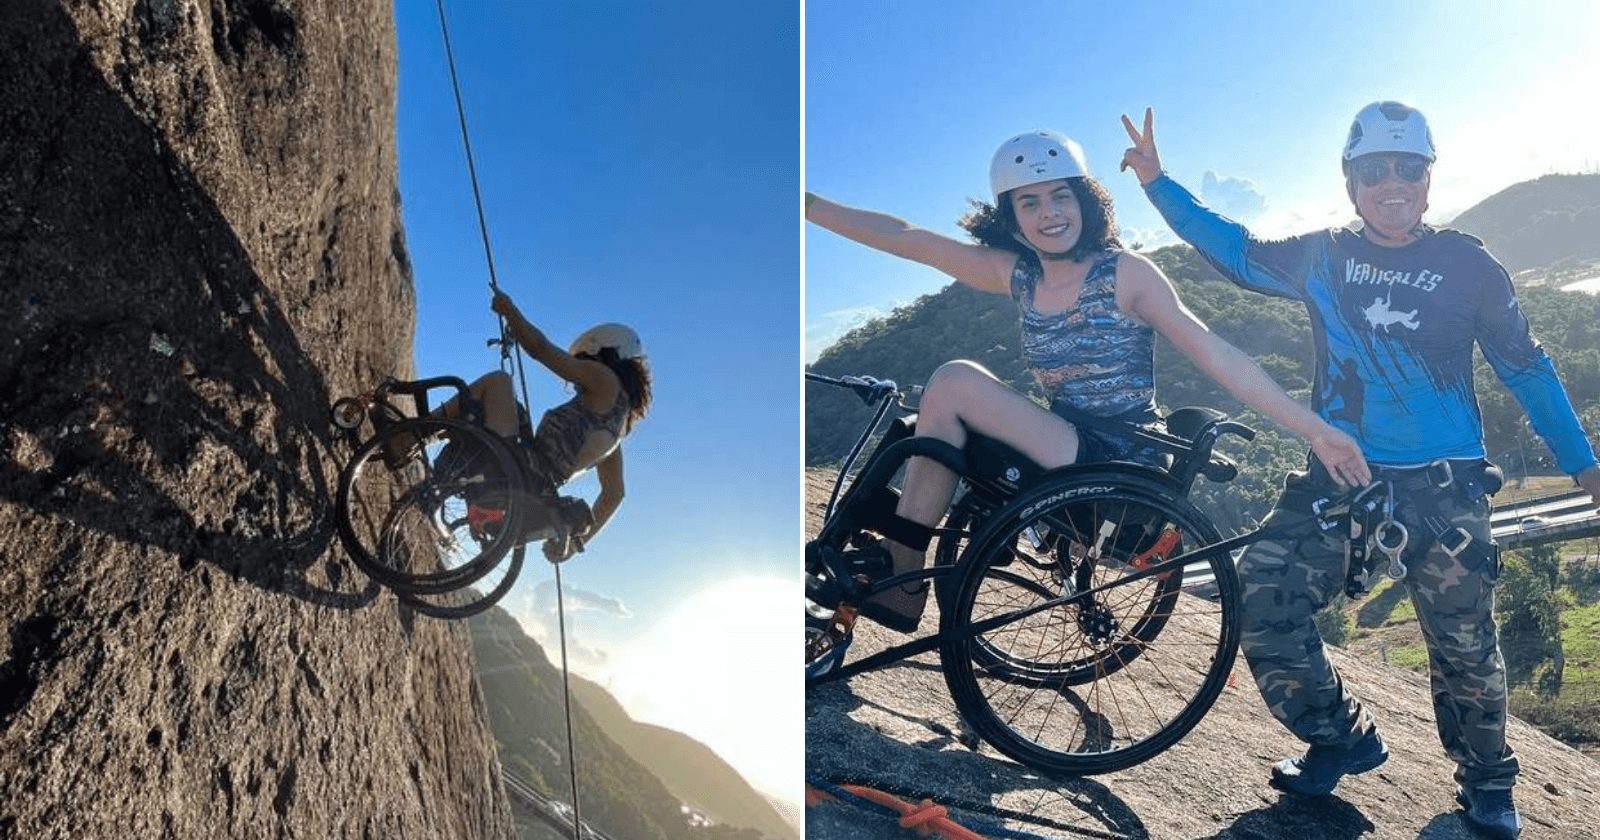 INSPIRAÇÃO: Jovem paraplégica realiza sonho e faz rapel no Morro do Moreno